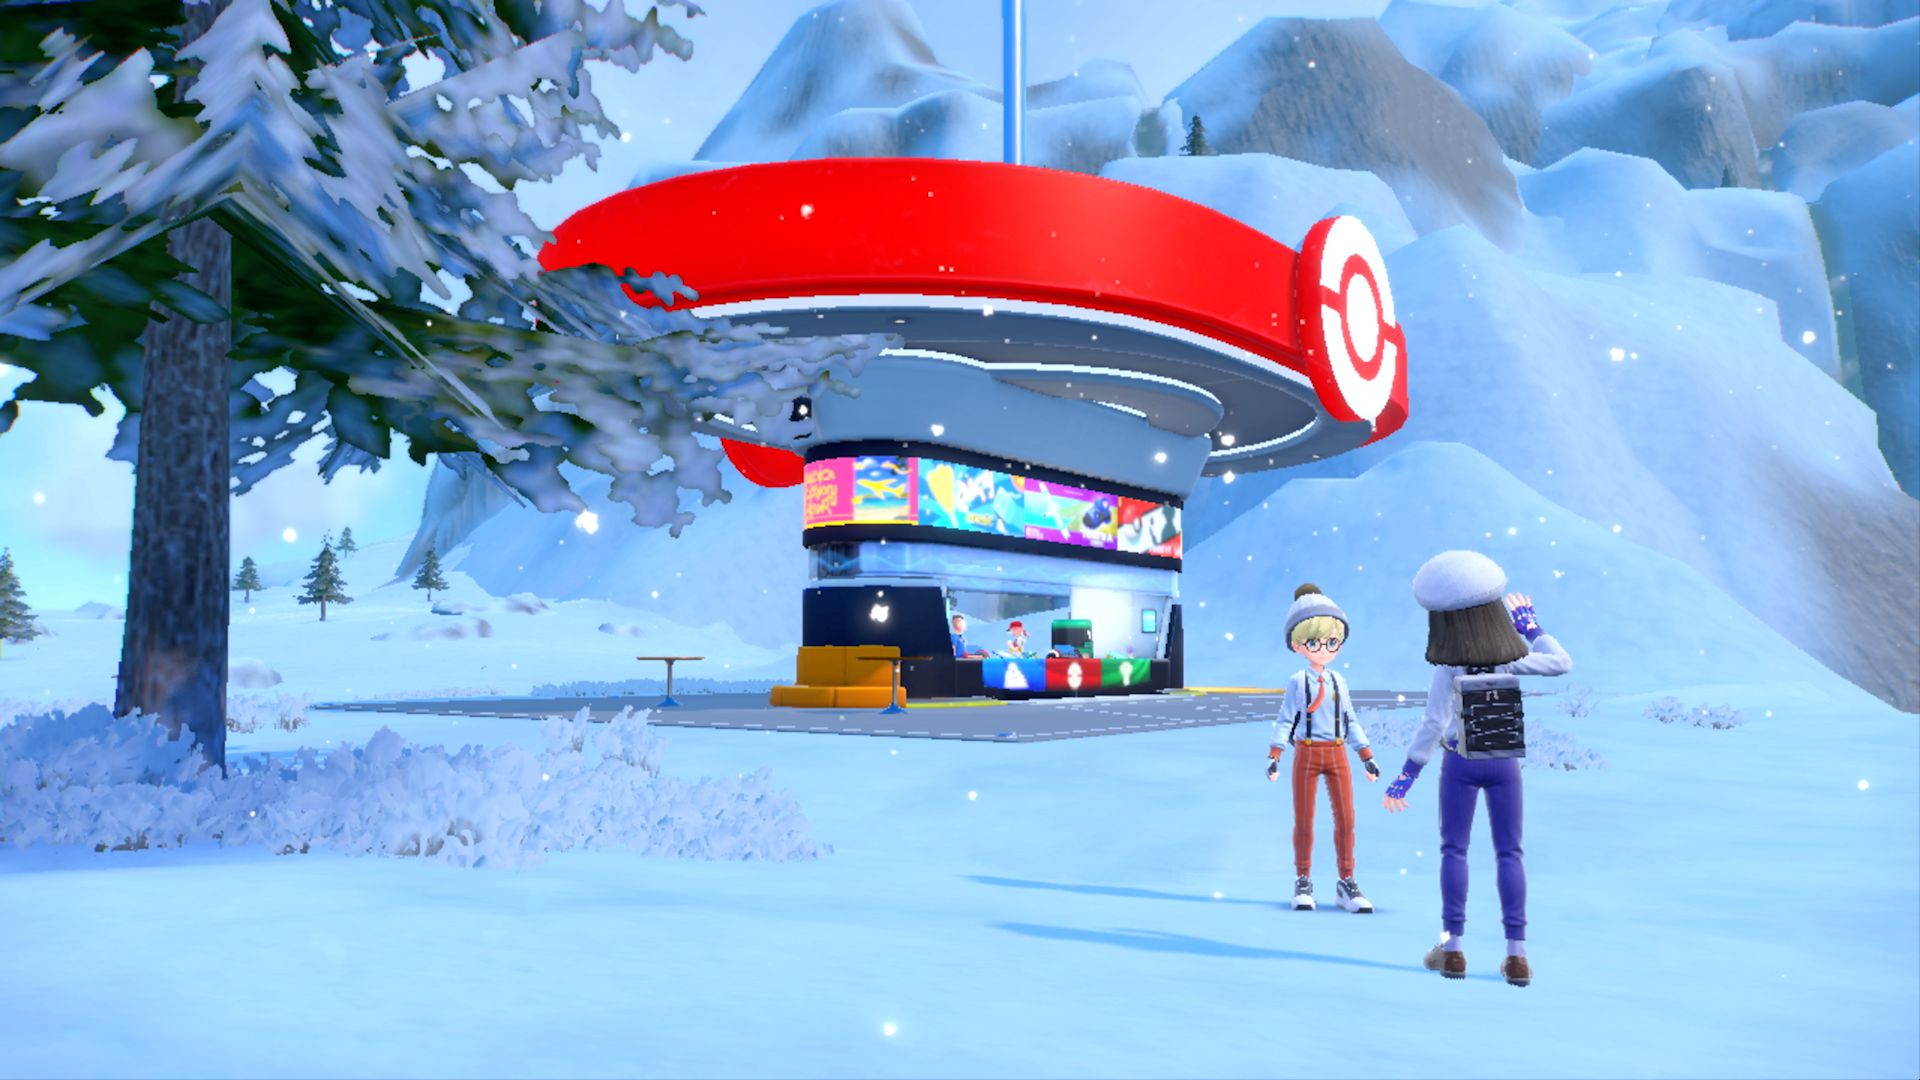 A Pokémon Center kiosk building in a snowy area